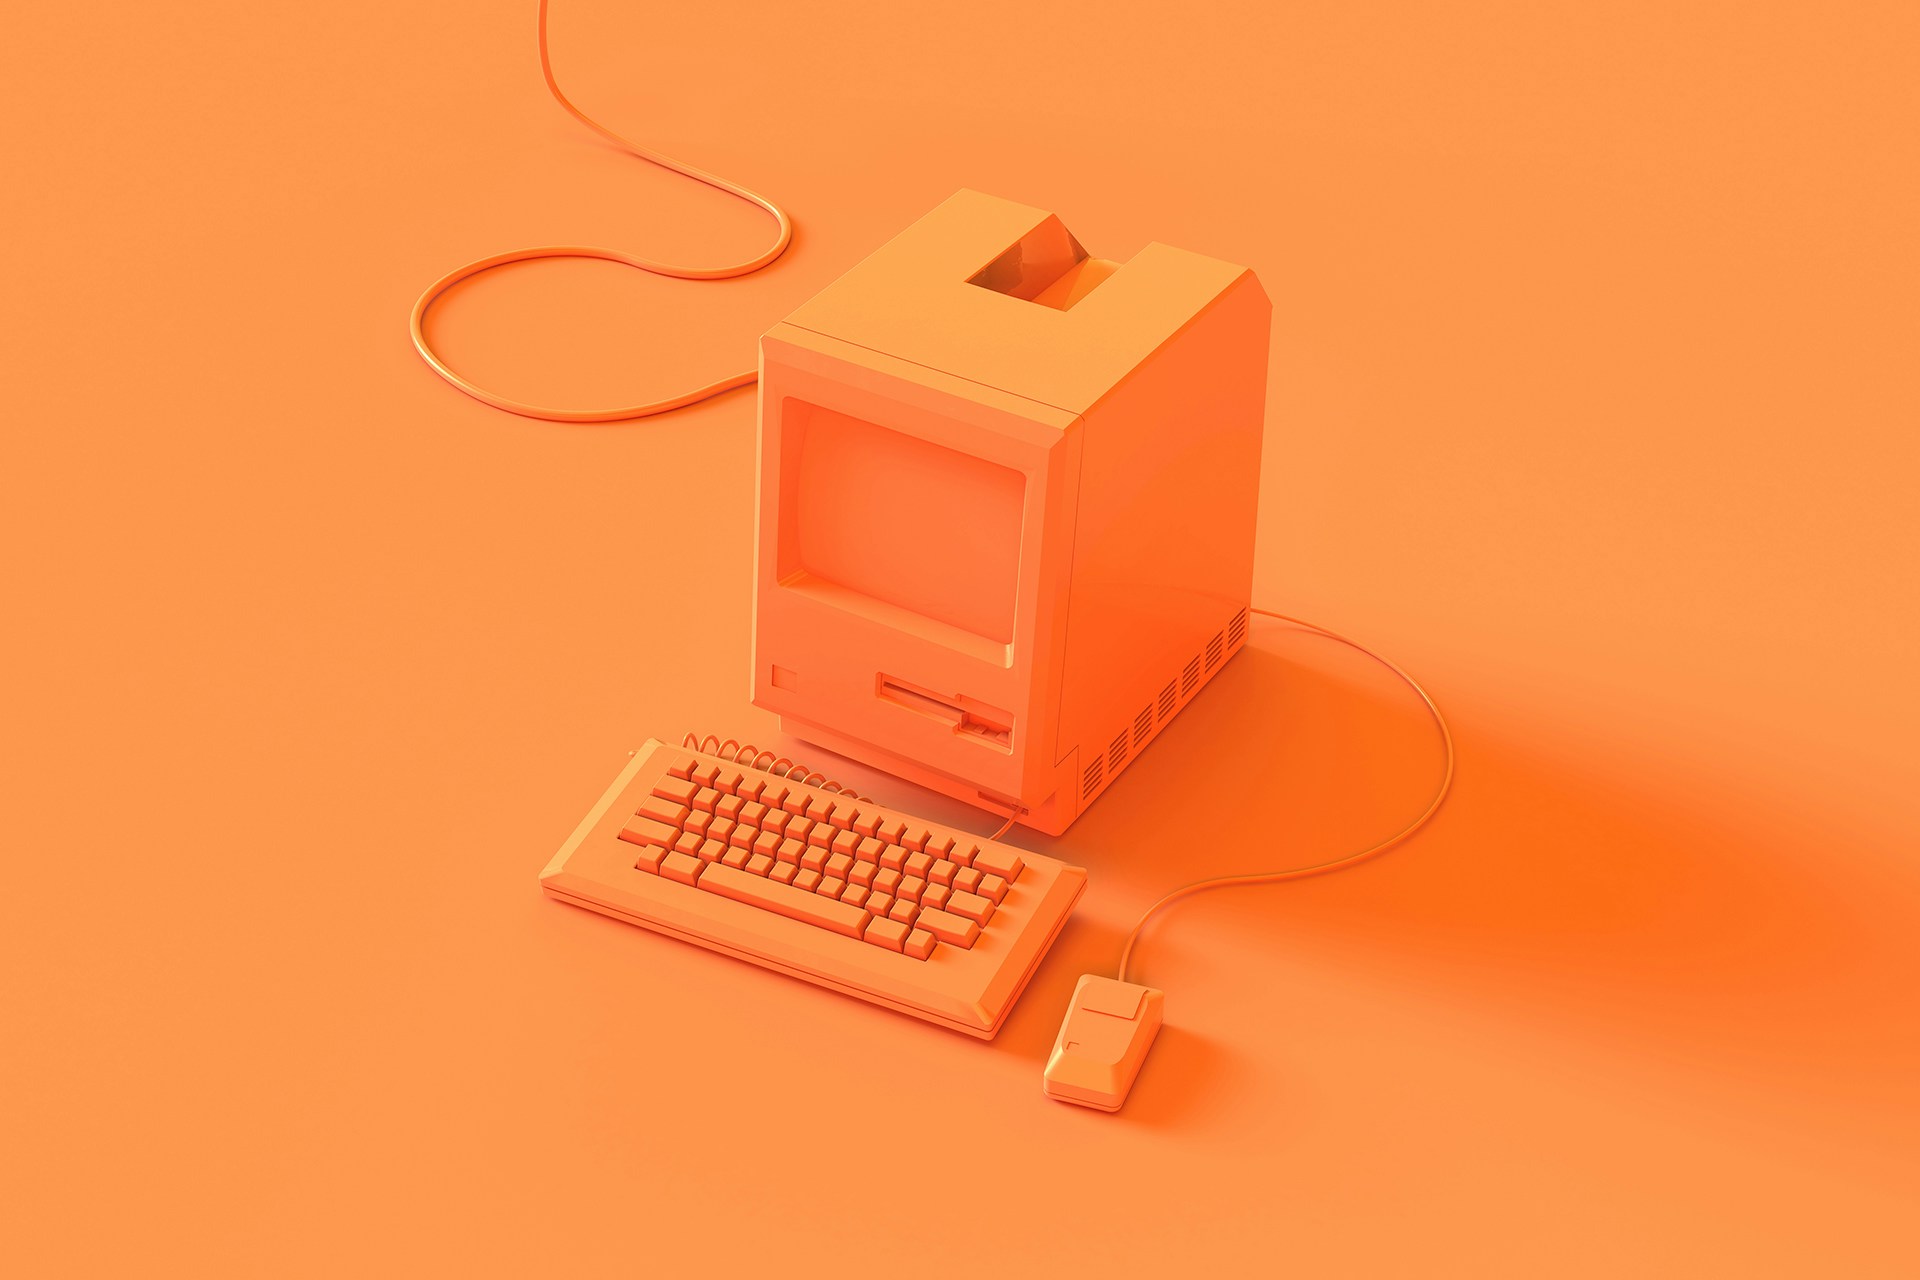 Ein orange gestrichener Retro-Computer vor einem orangenen Hintergrund als Titelbild für unseren Blog zu Big Data Analytics für Unternehmen